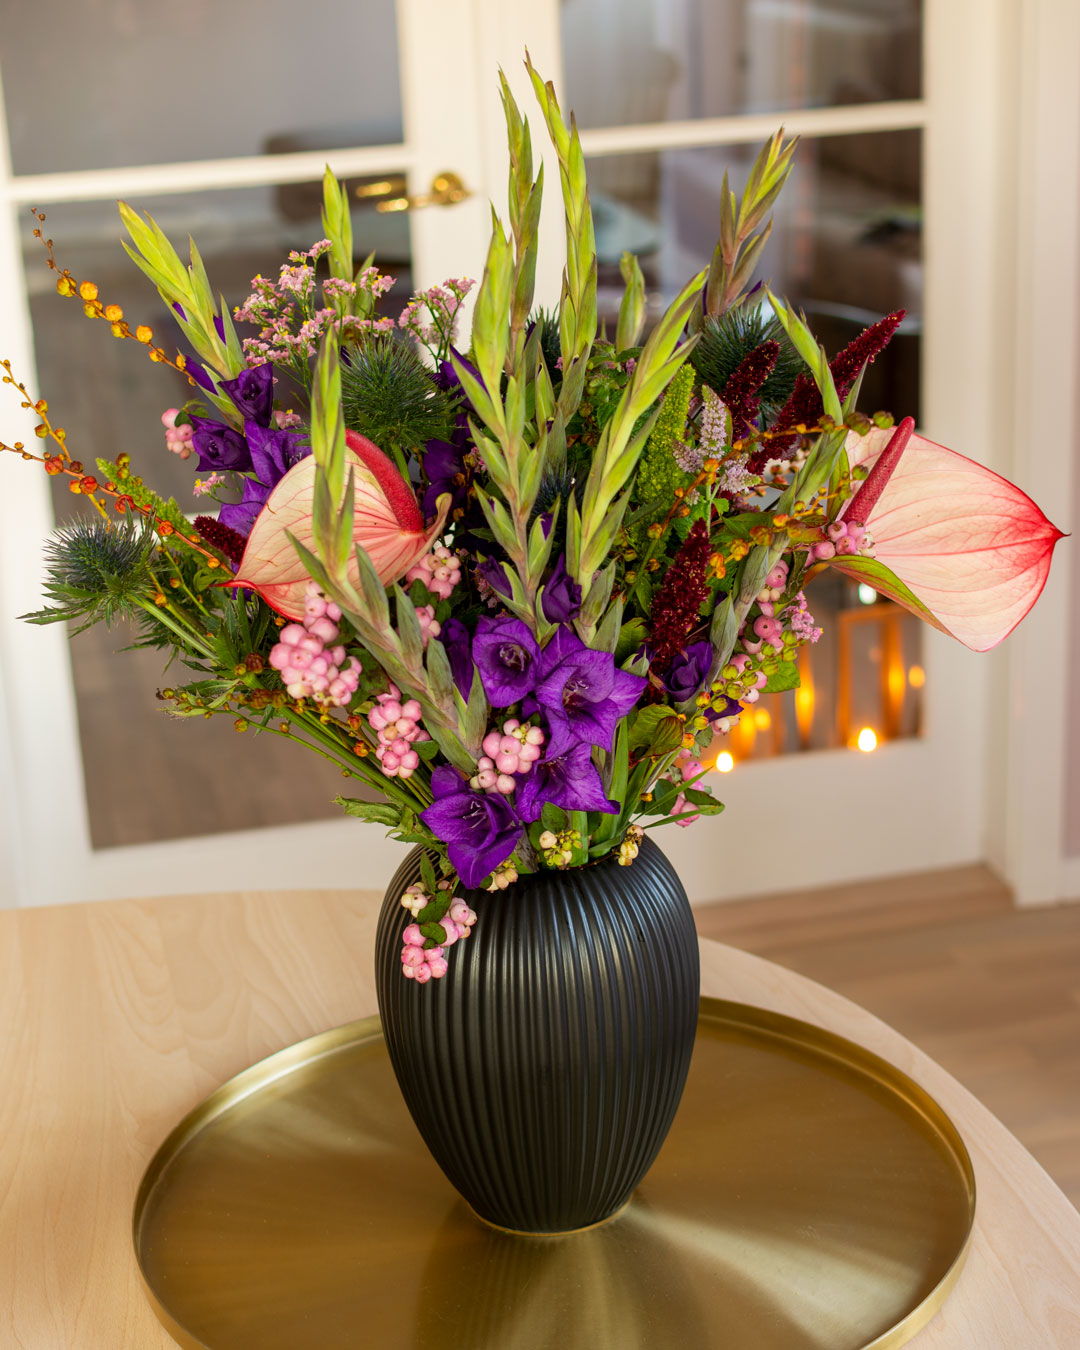 Sort vase fra Michael Andersen Keramik med blomster på messingbakke